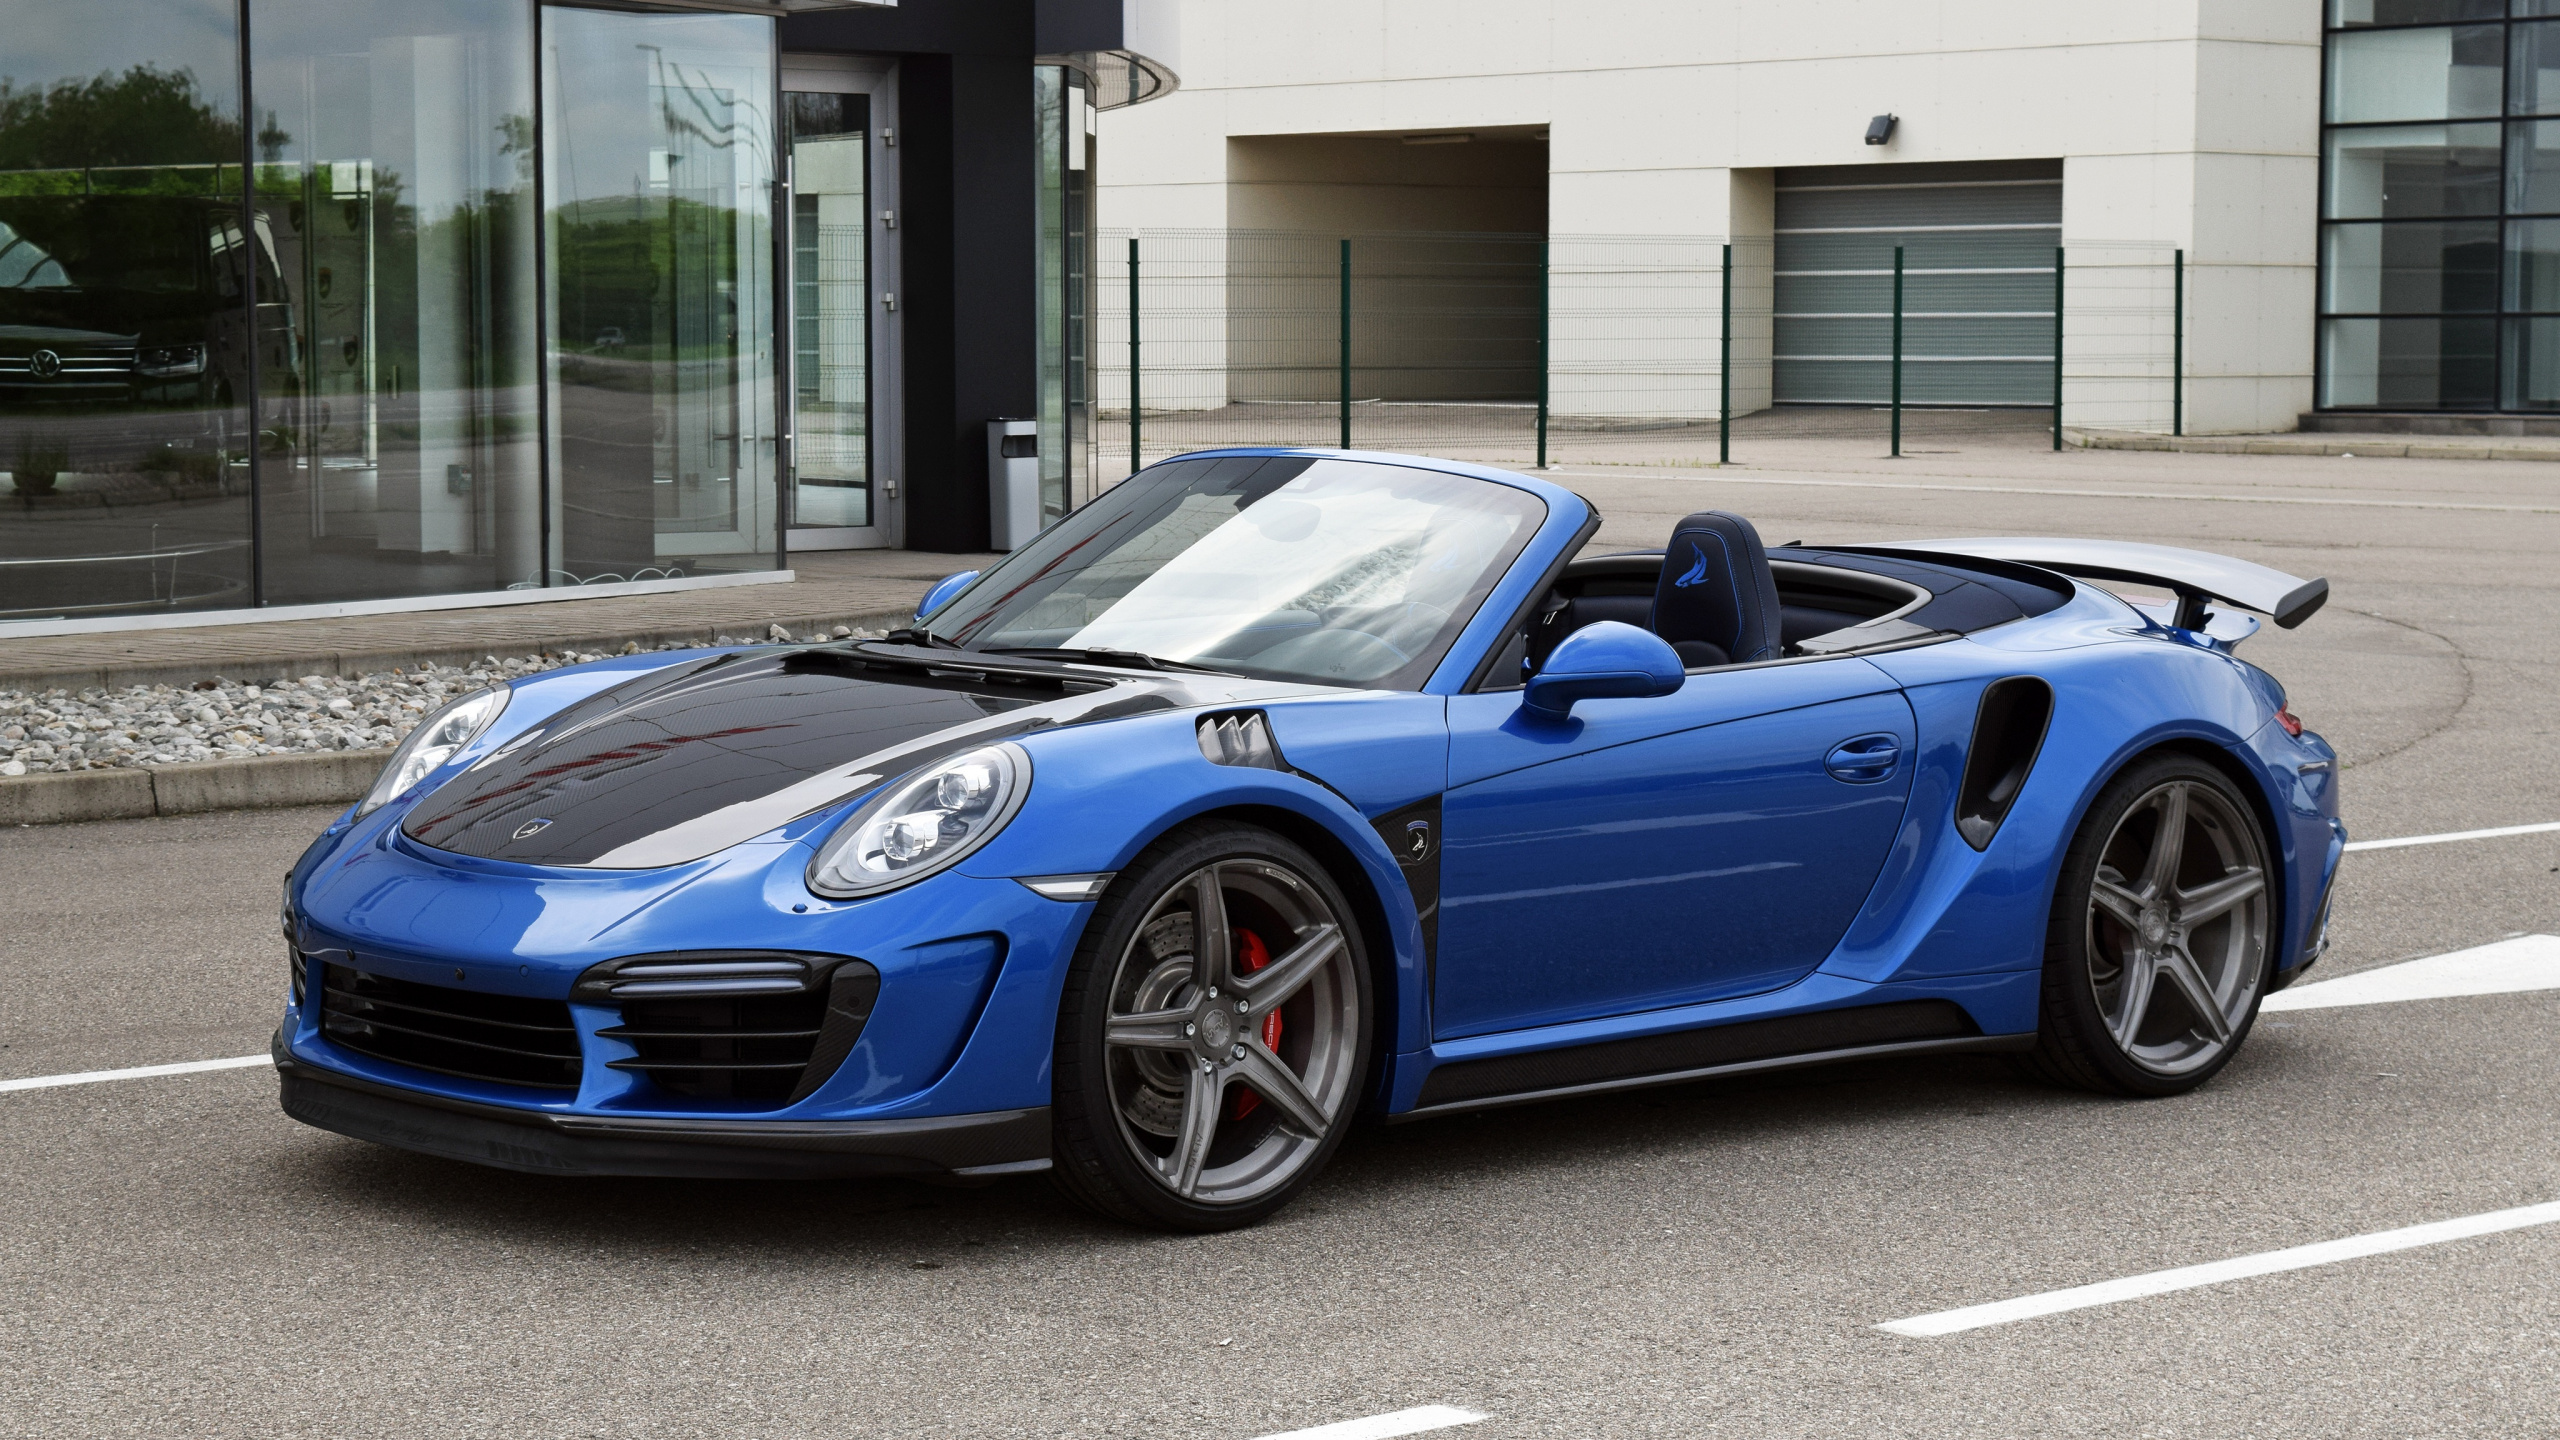 Blauer Porsche 911 Tagsüber in Der Nähe Des Gebäudes Geparkt. Wallpaper in 2560x1440 Resolution